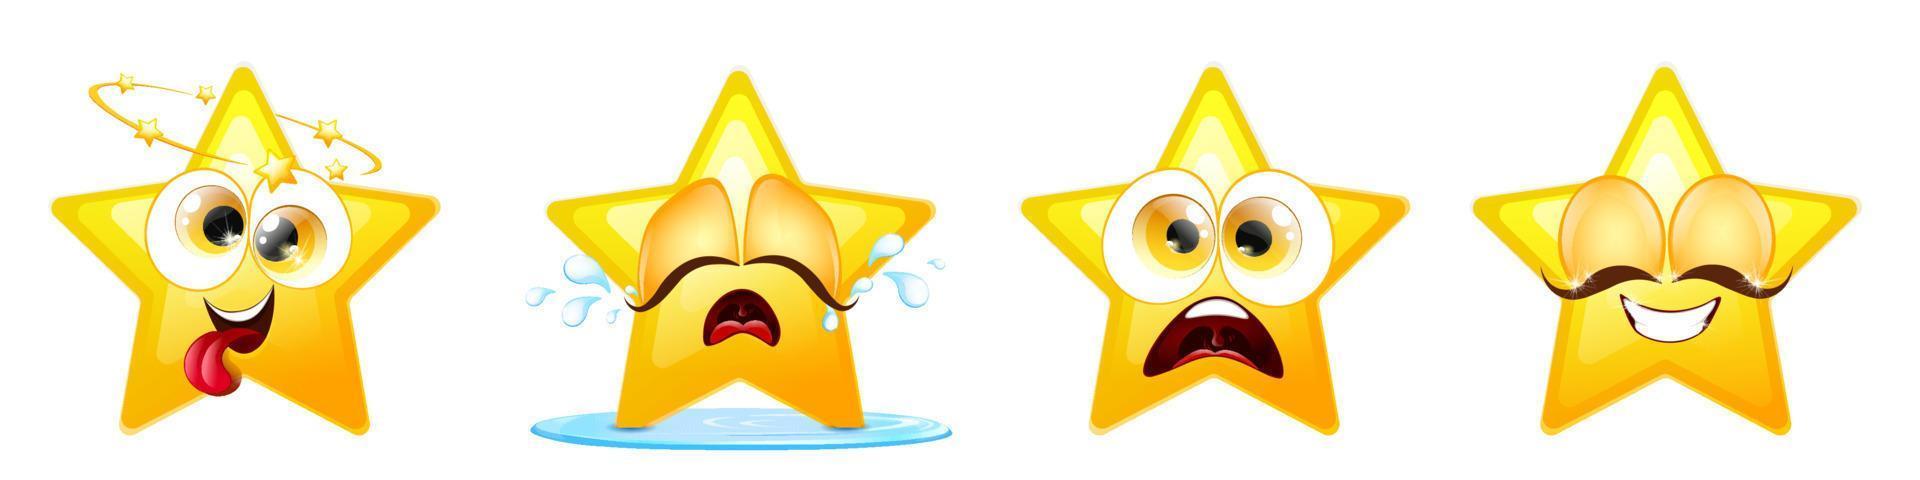 conjunto de ícones de estrelas emoji vetor